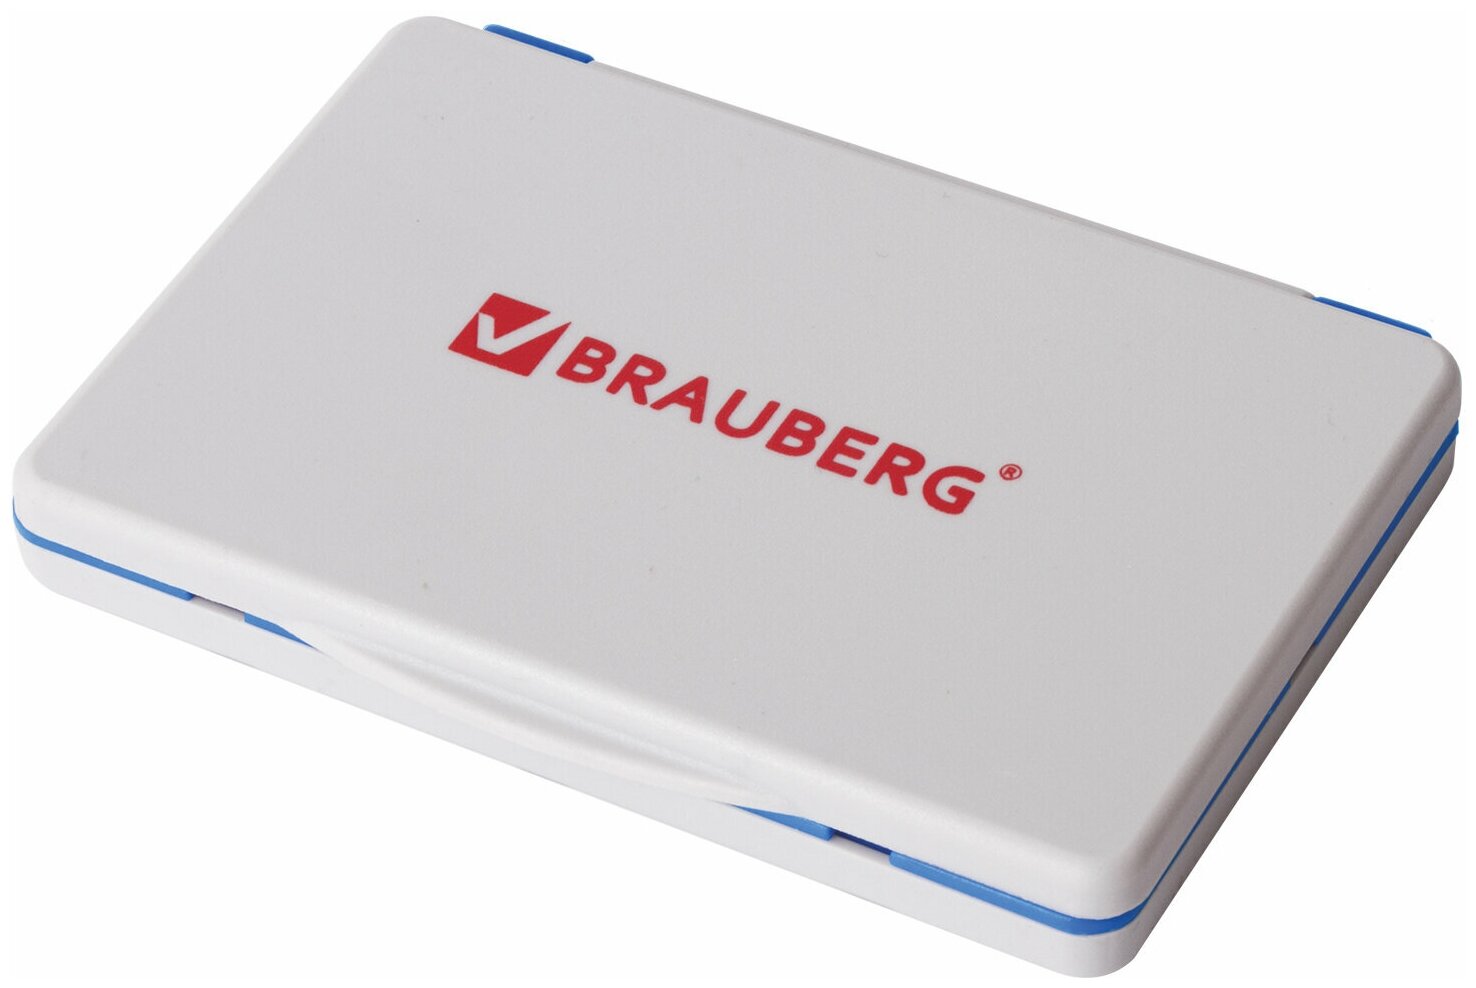 BRAUBERG Штемпельная подушка brauberg 100х80 мм (рабочая поверхность 90х50 мм) синяя краска 236867 6 шт.